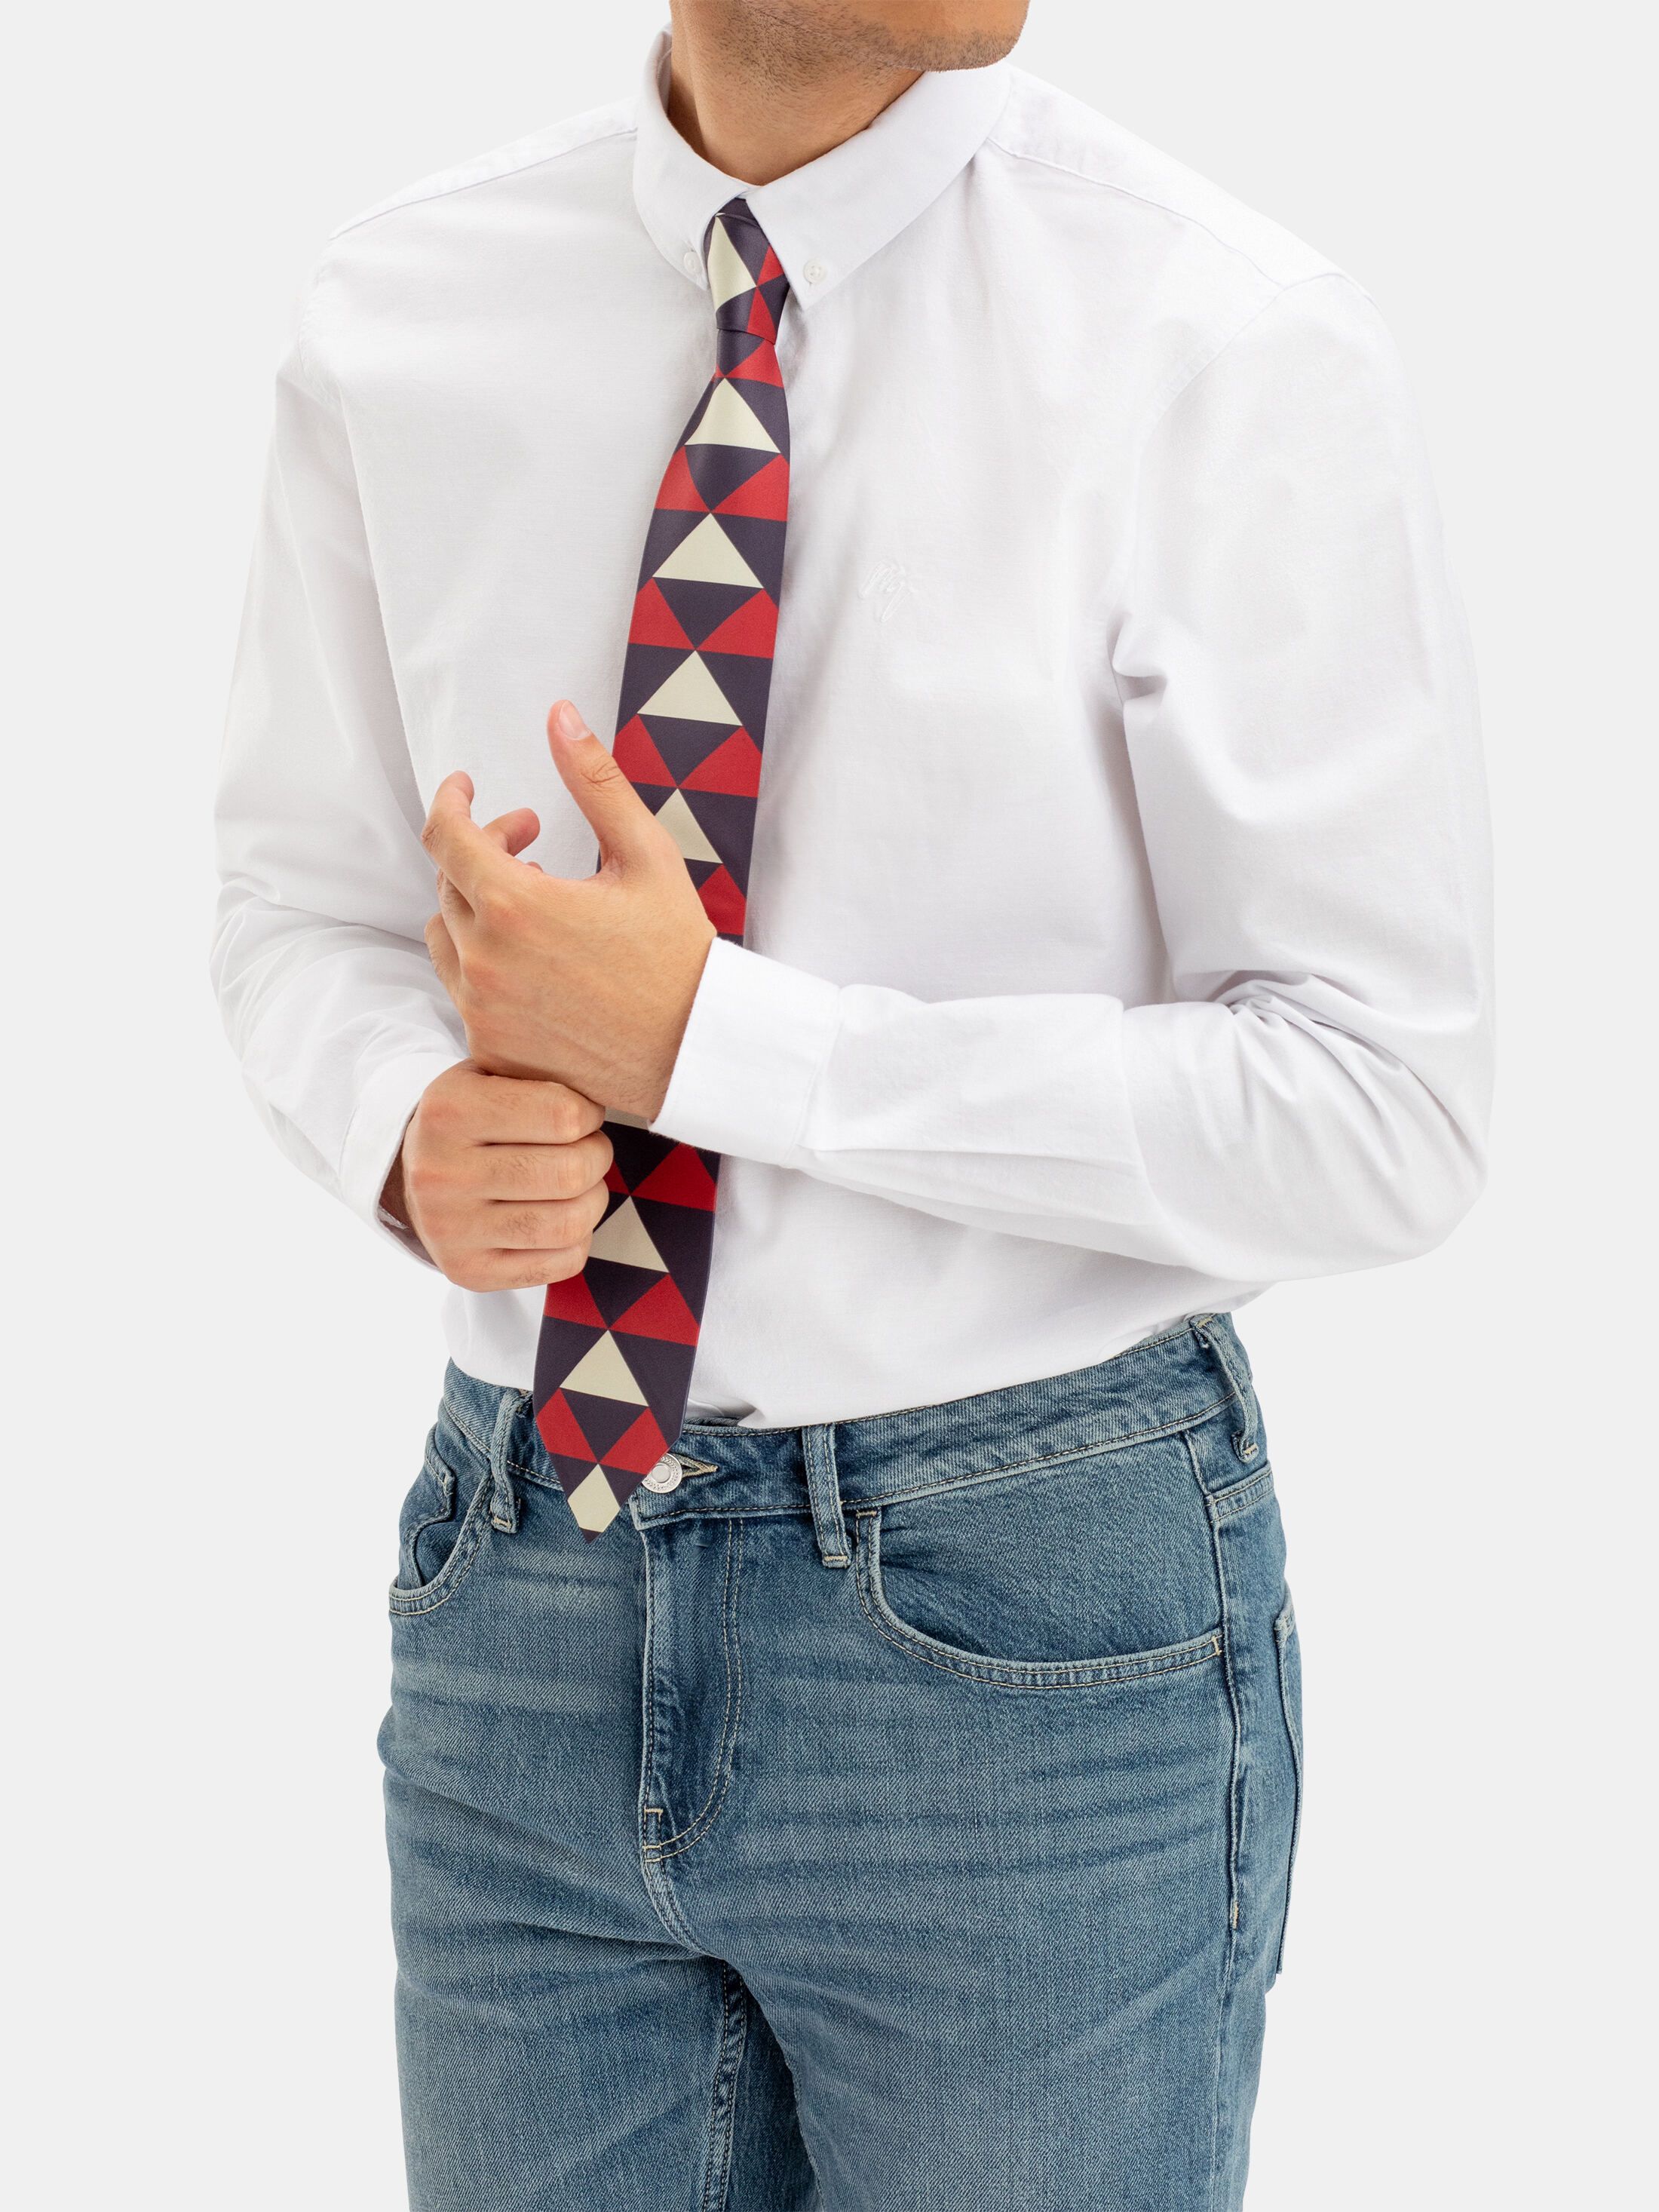 diseña tu corbata